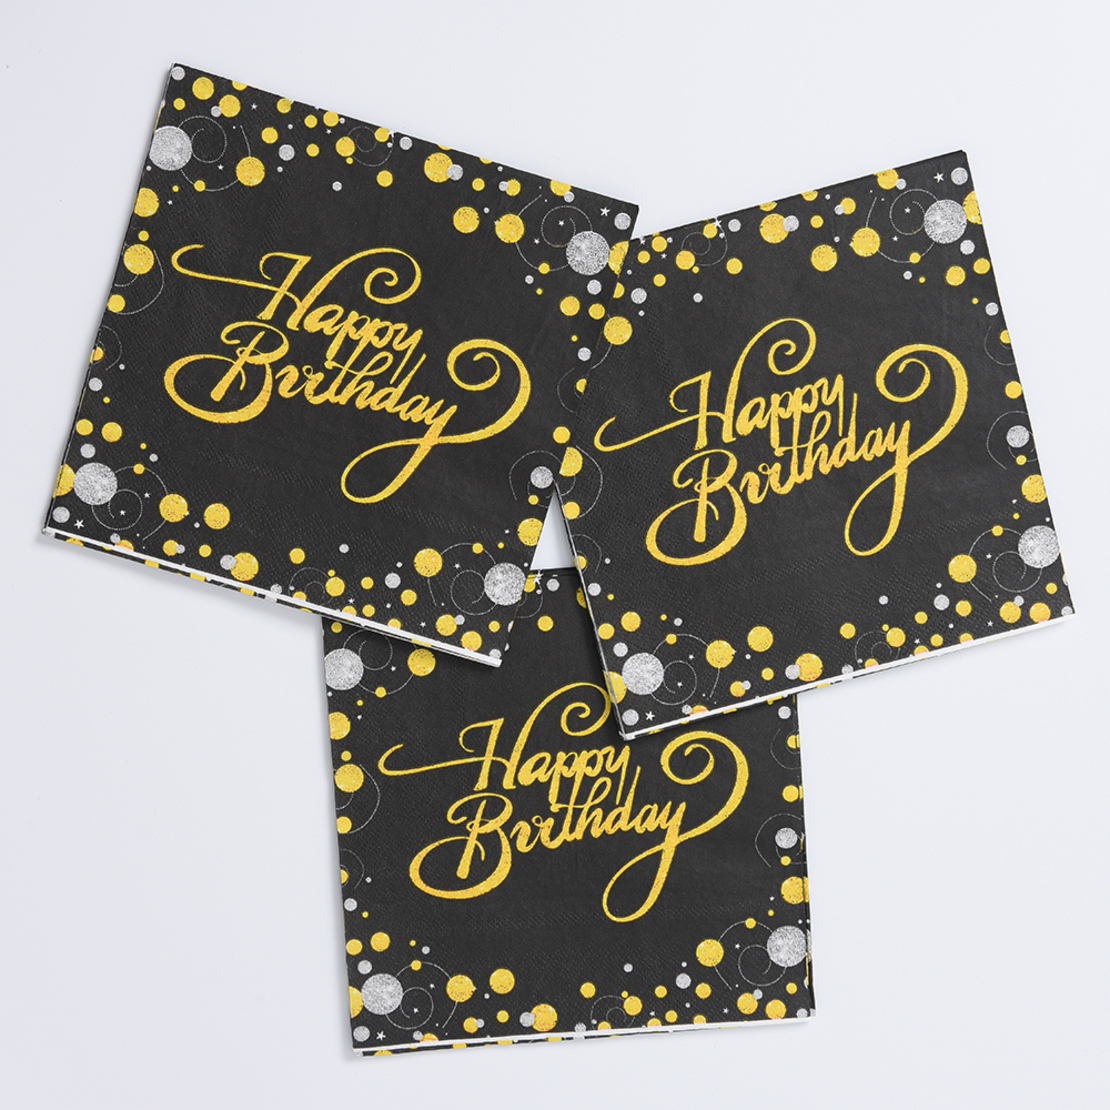 מפיות מעוצבות - יום הולדת שחור זהב